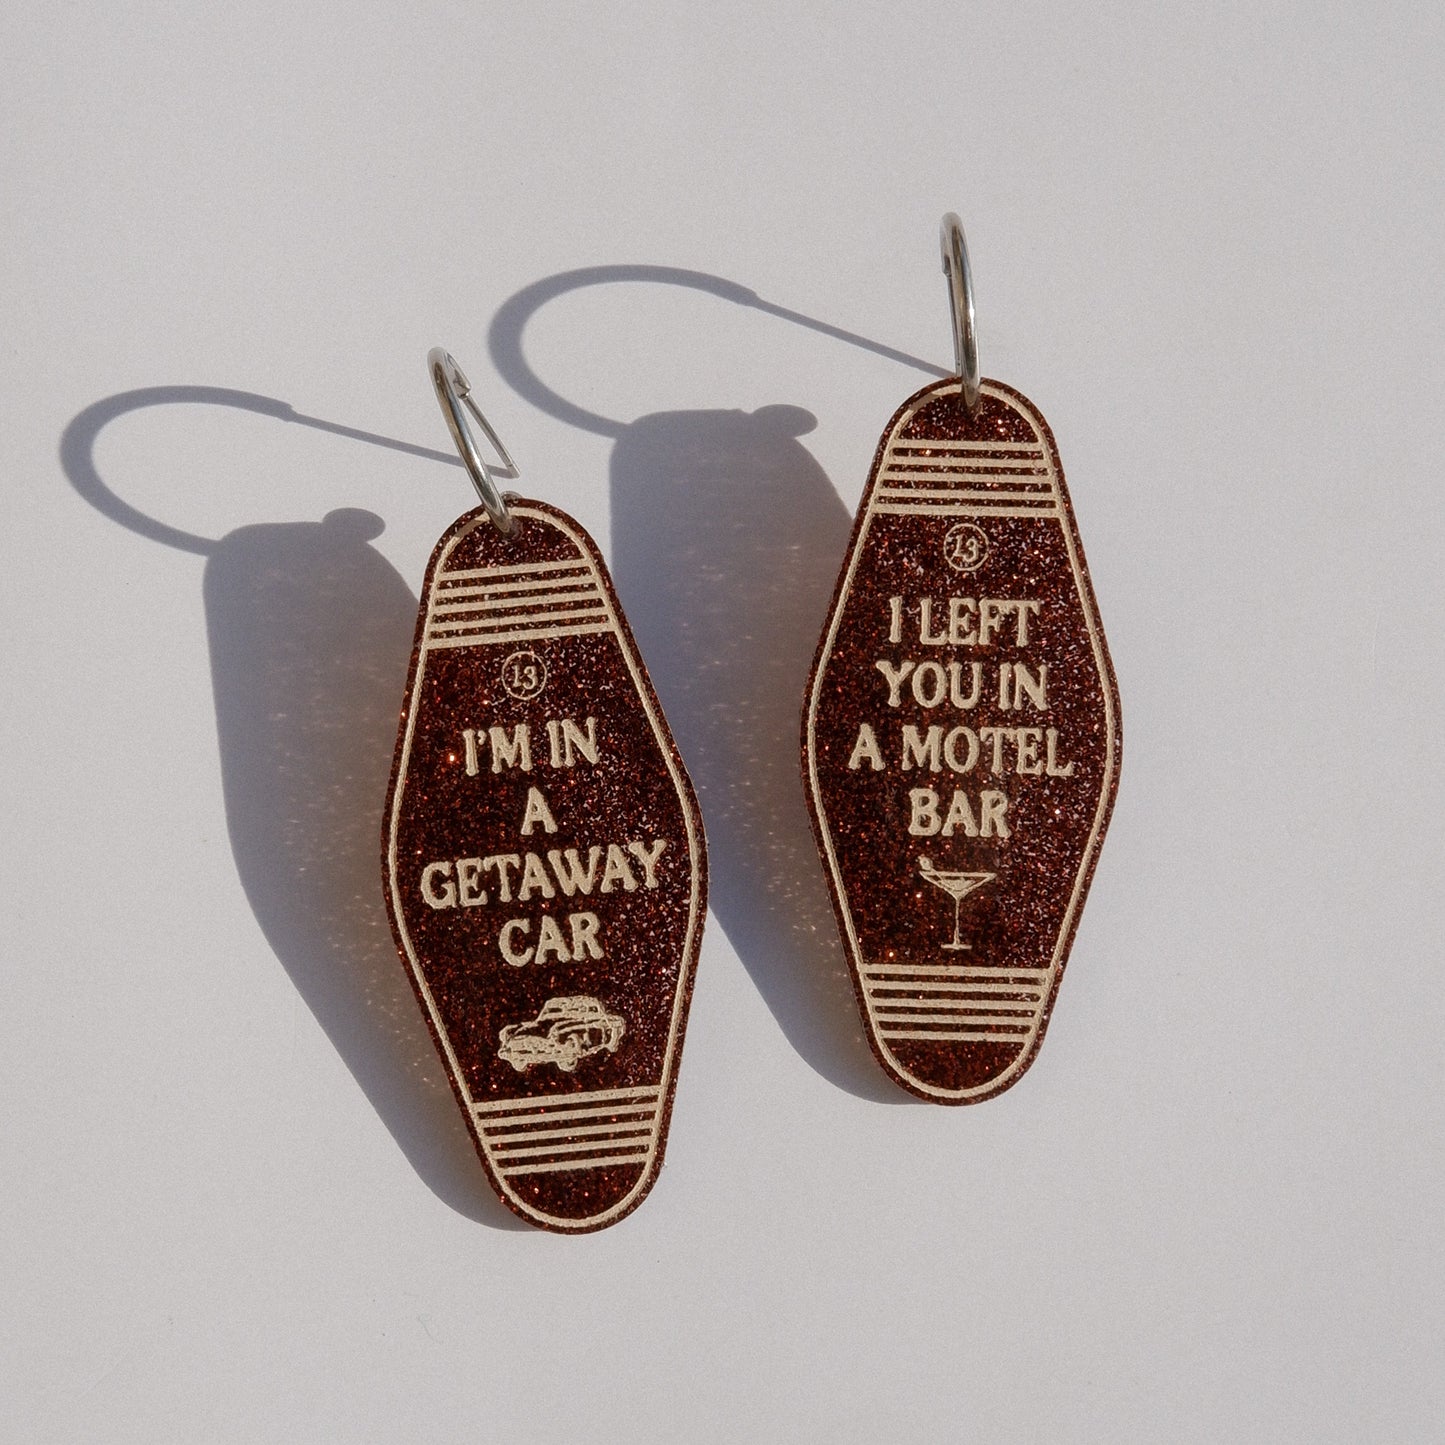 getaway car keychain earrings - taylor swift earrings